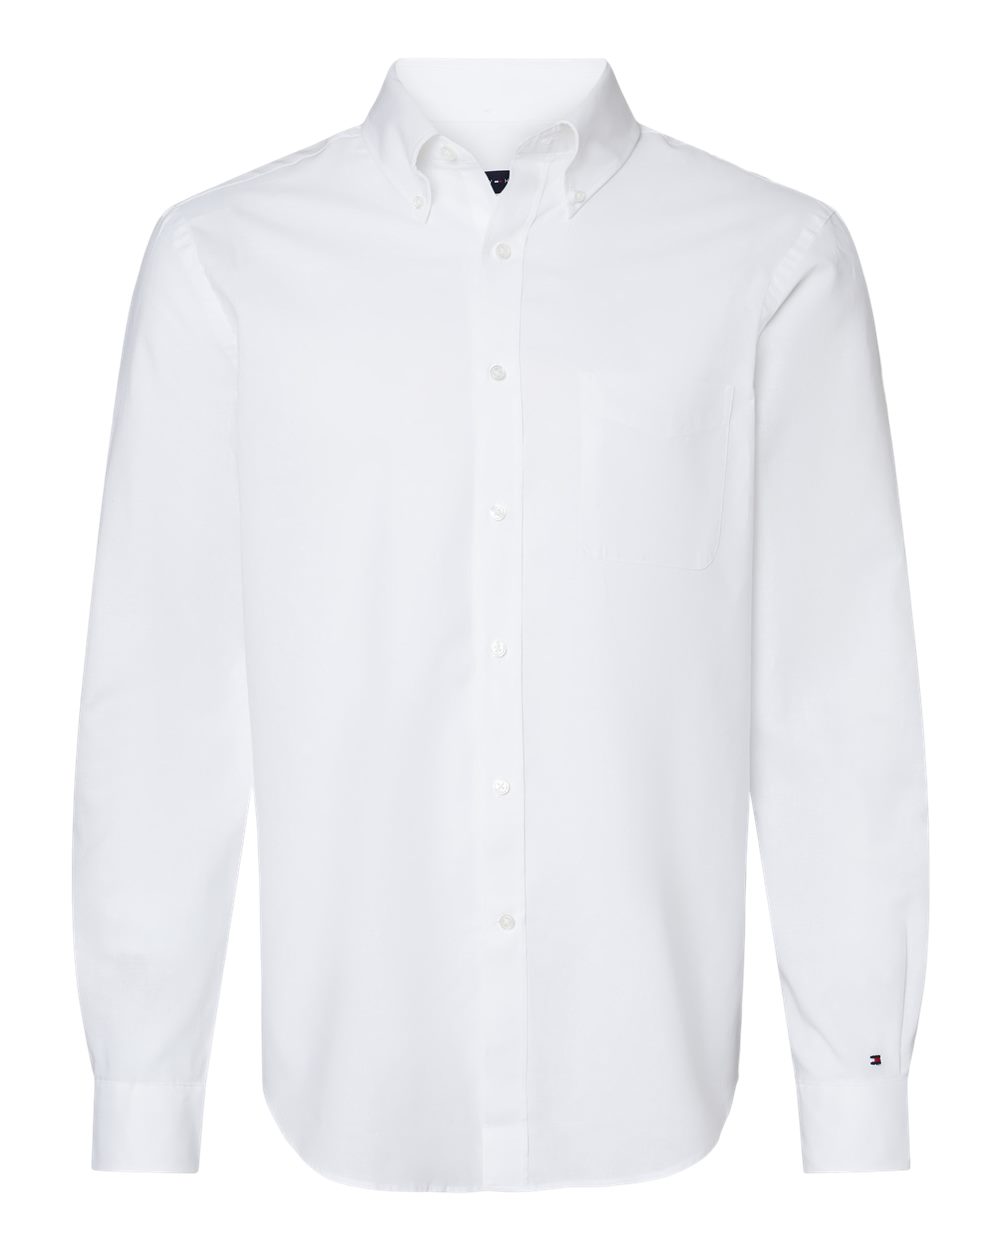 Cotton/Linen Shirt - Tommy | Shop Online